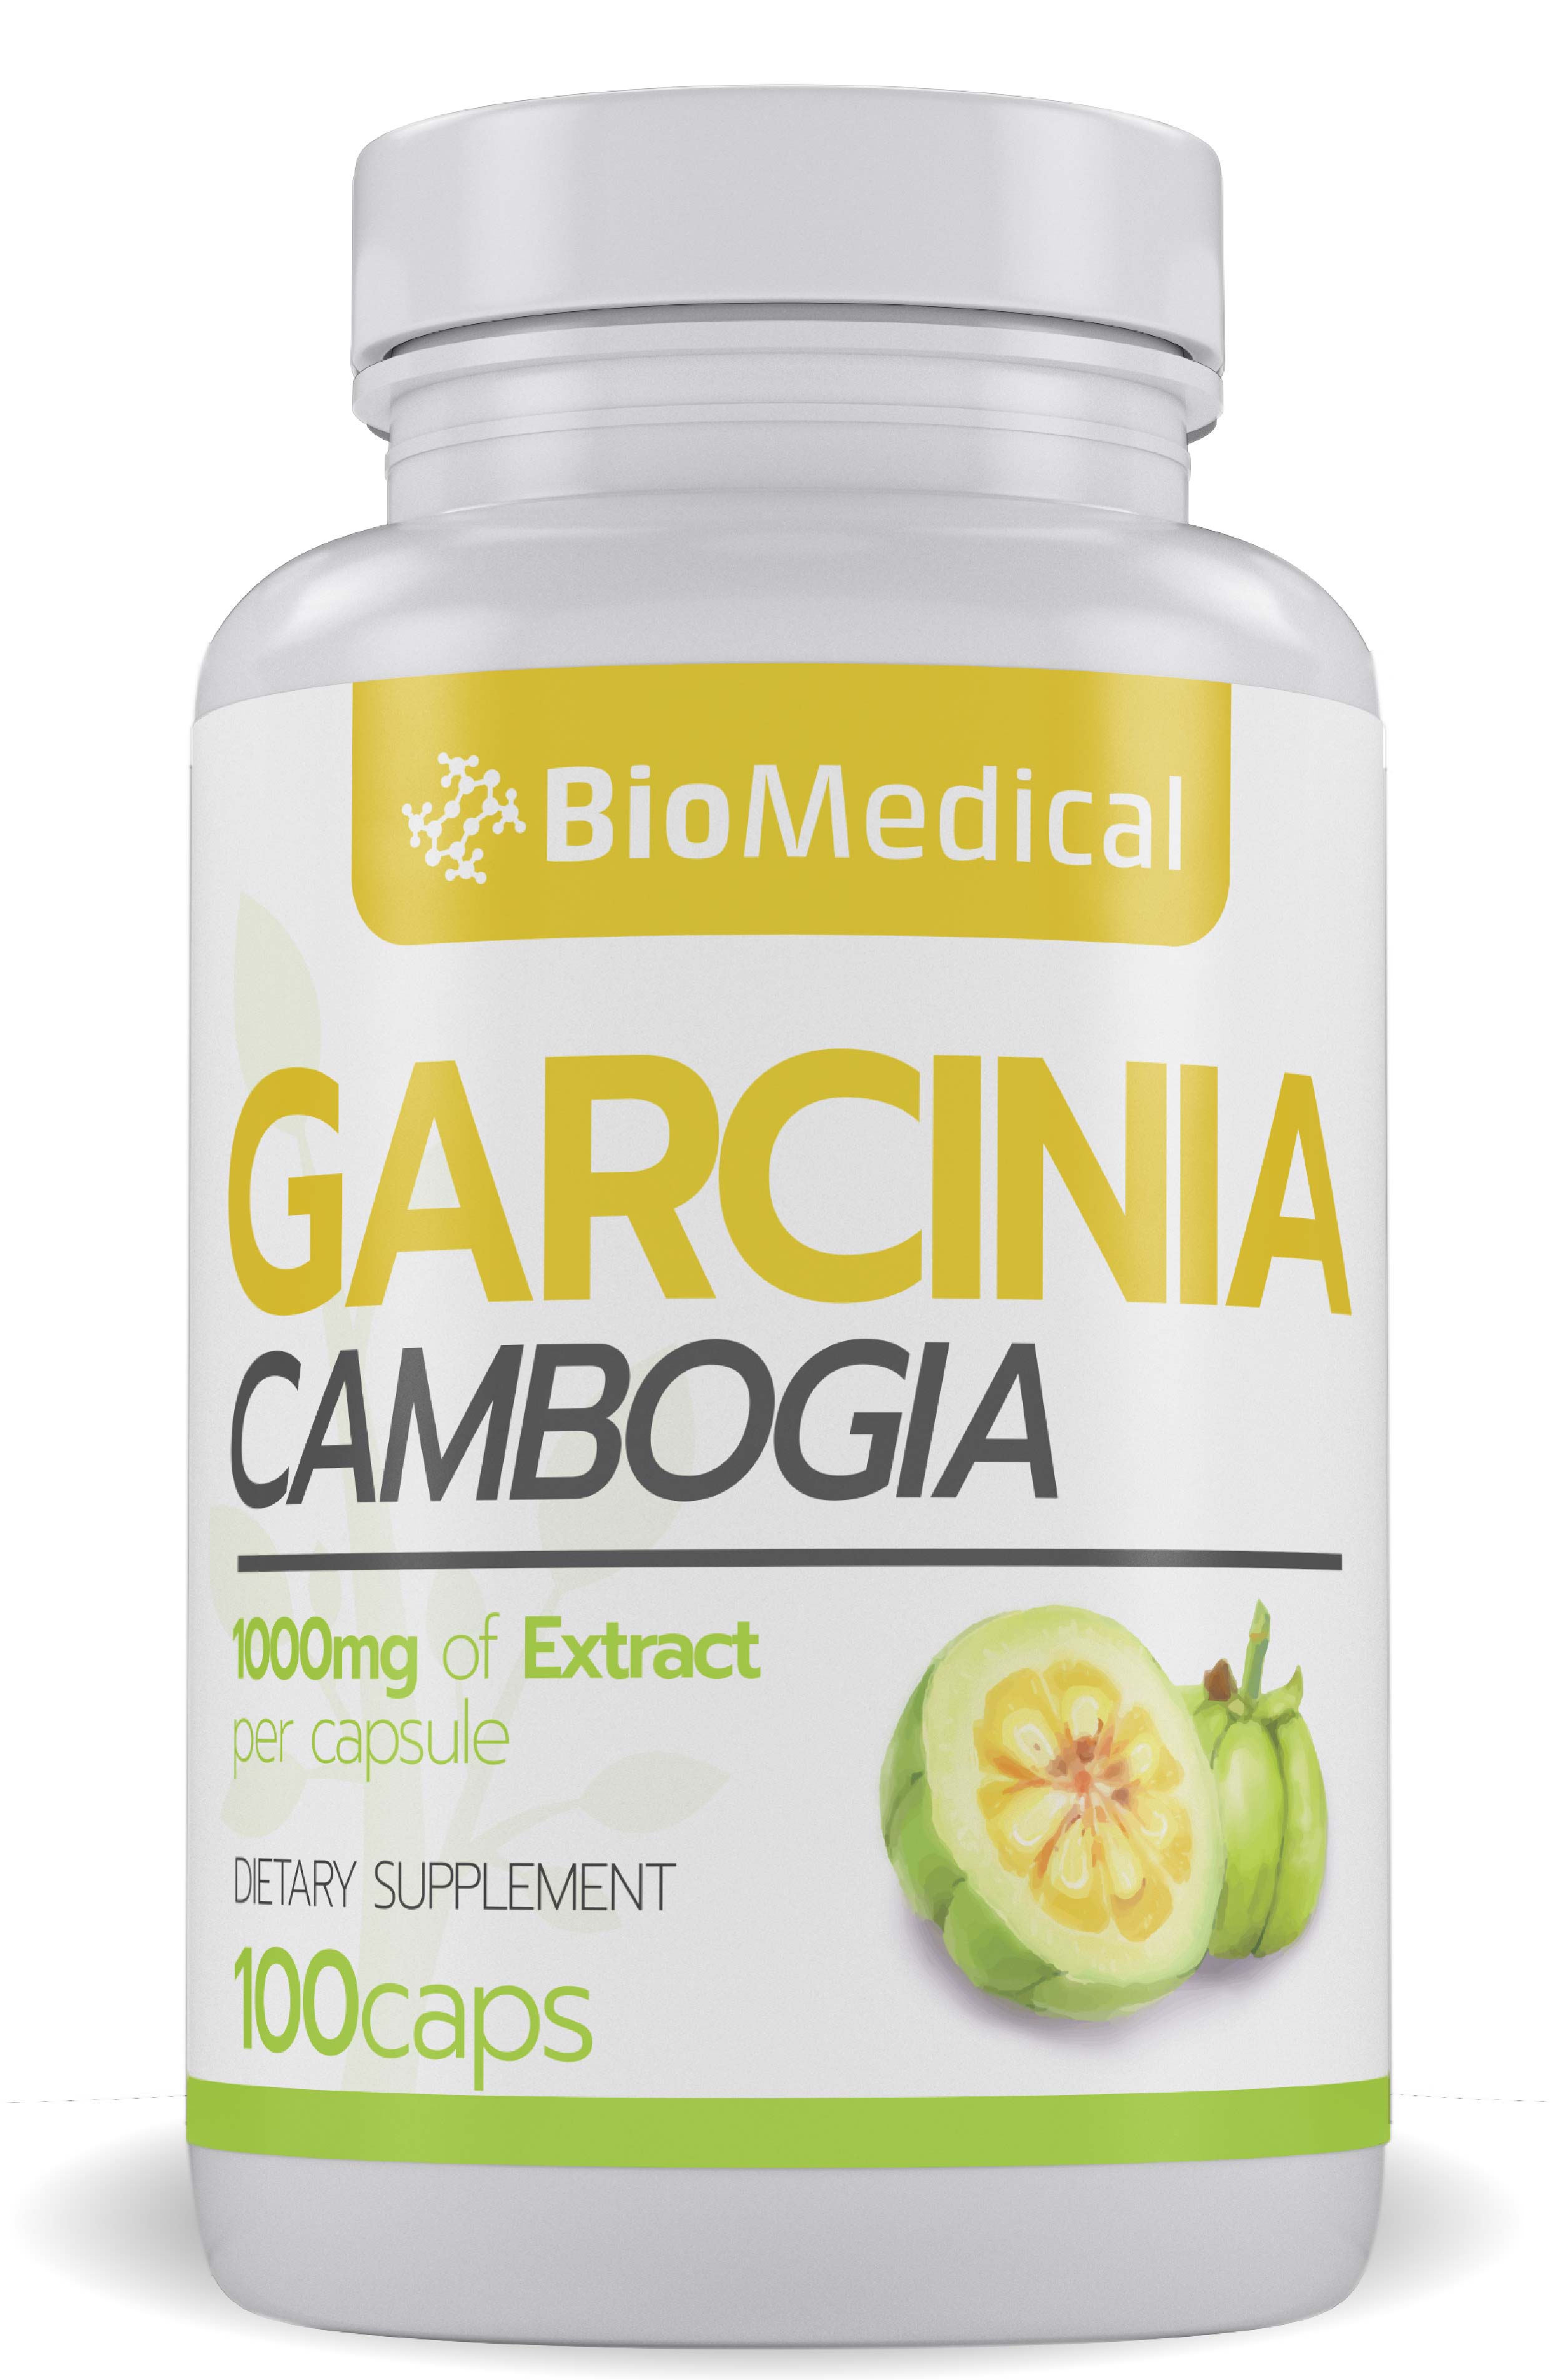 Garcinia Cambogia Veda